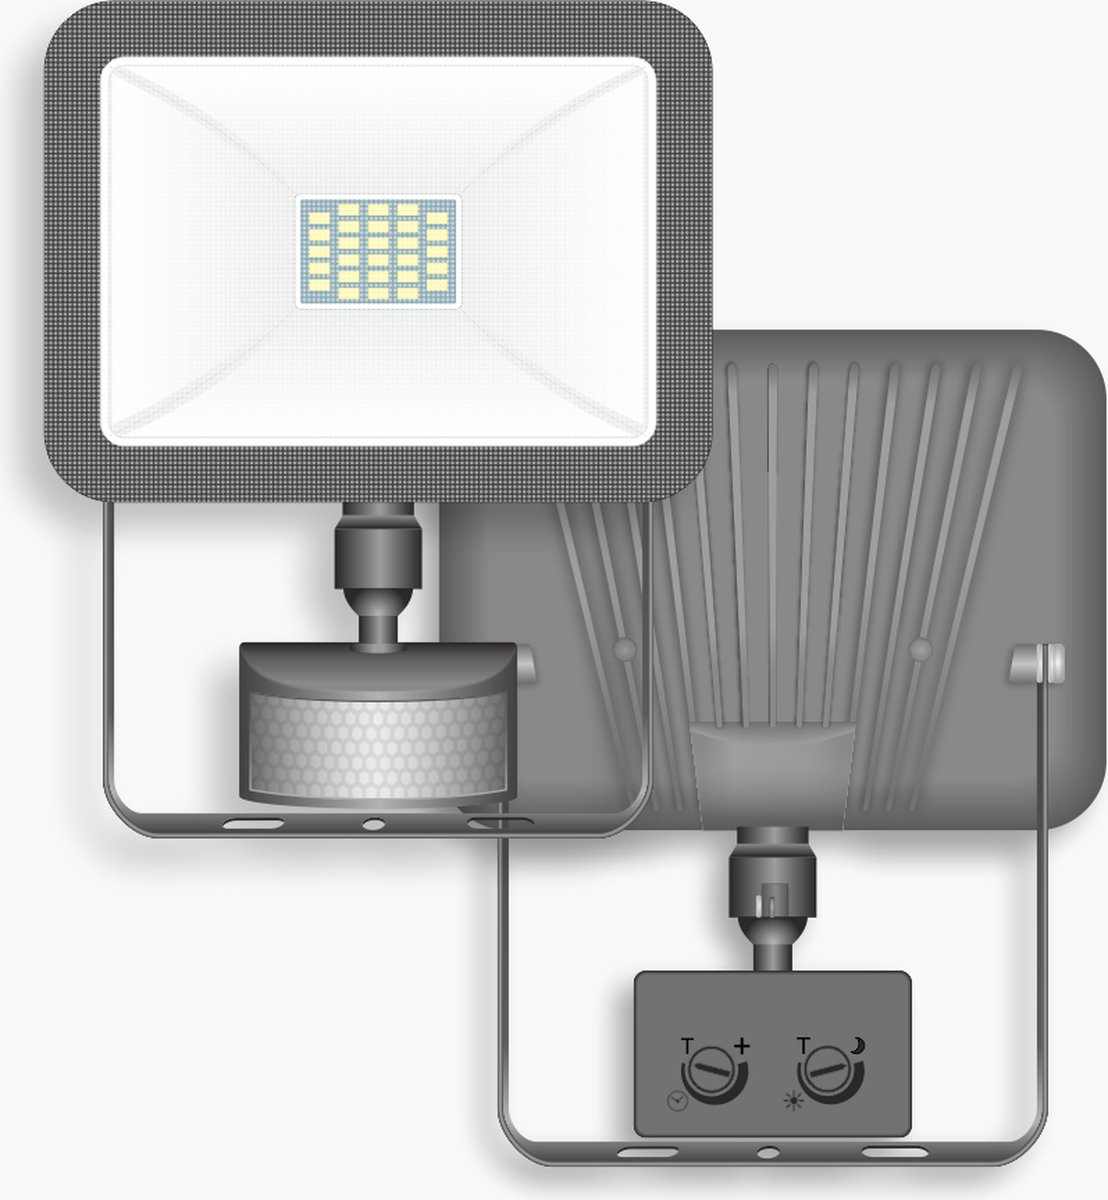 Lampe d'extérieur LED ELRO LF60 Design avec Détecteur de Mouvement - 20W -  1600LM - Étanche IP54 - Noir (LF60-20-P-B) ELRO